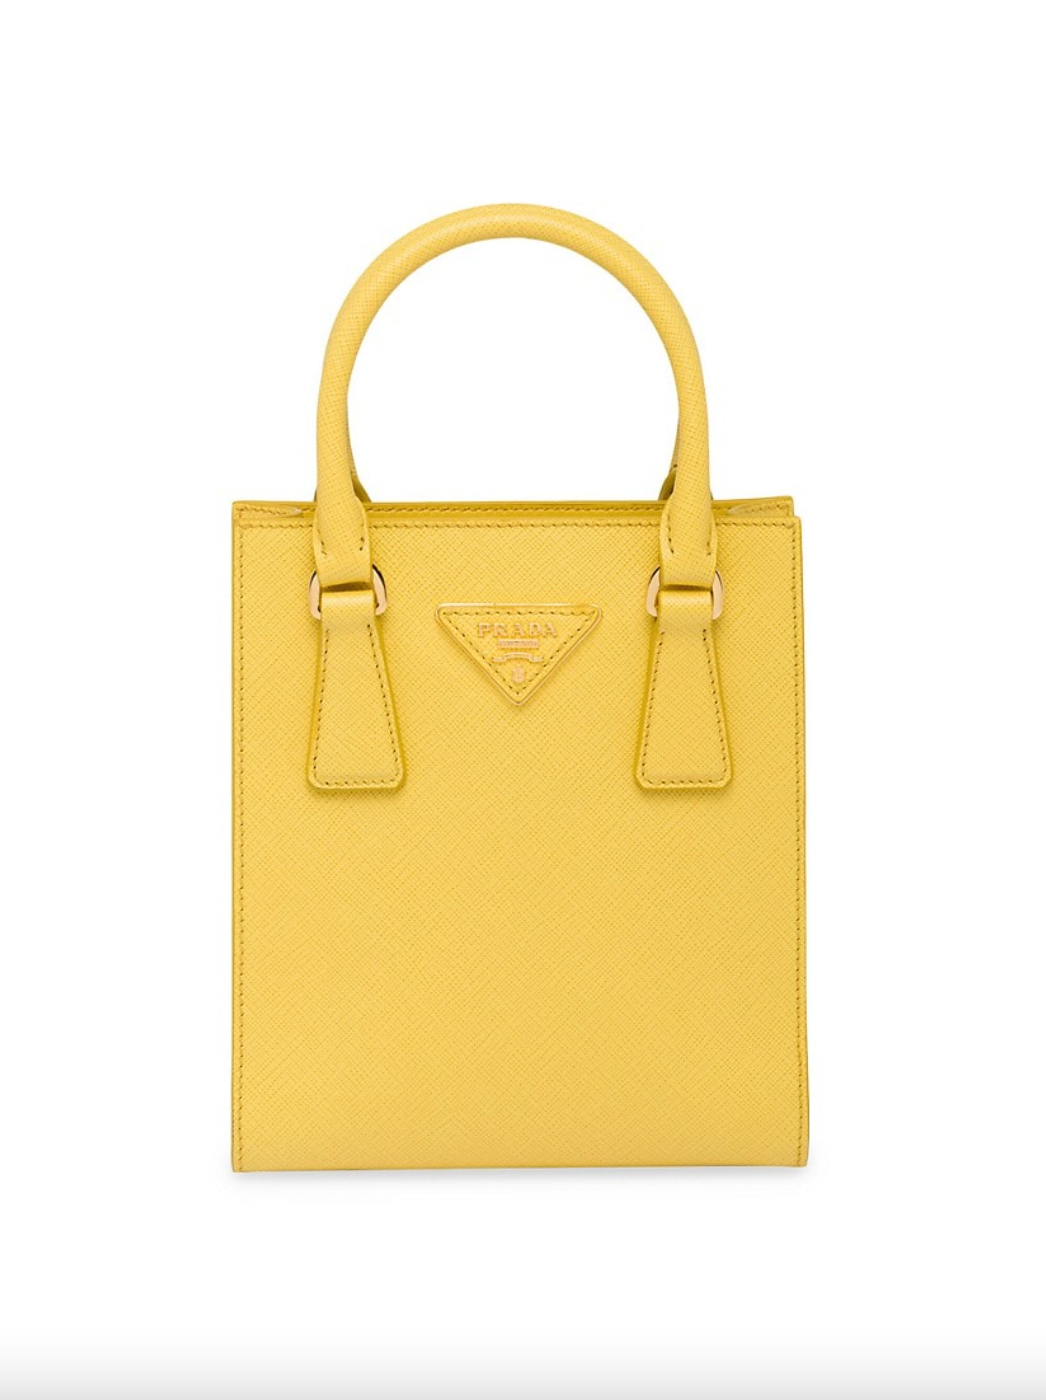 Prada + Saffiano Leather Handbag